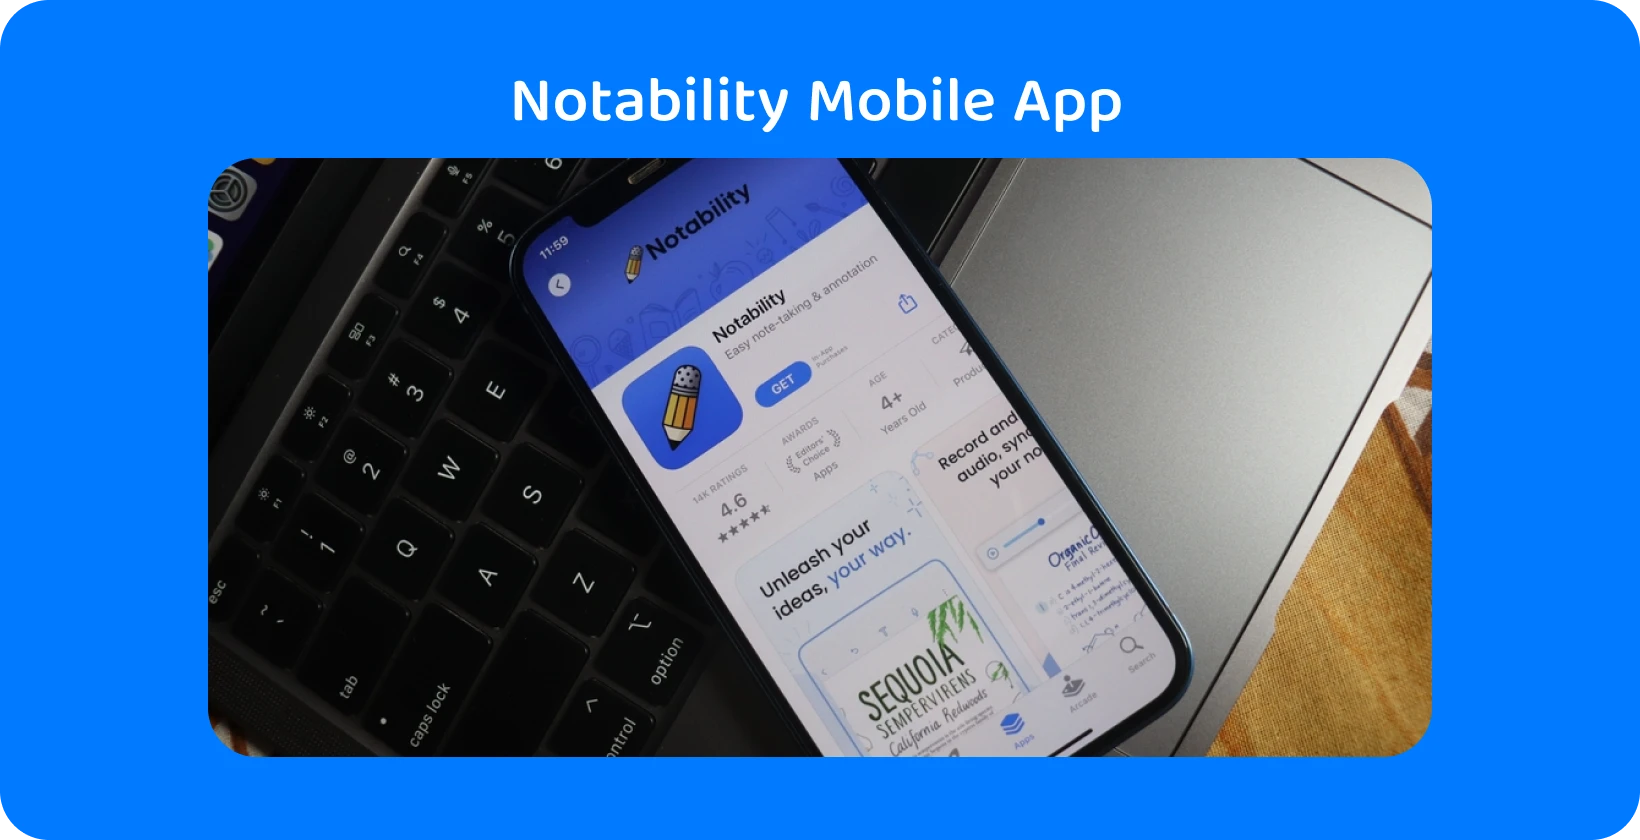 Notability aplikasi di layar smartphone dengan fitur transkripsi, menampilkan kemampuan audio-ke-teks.